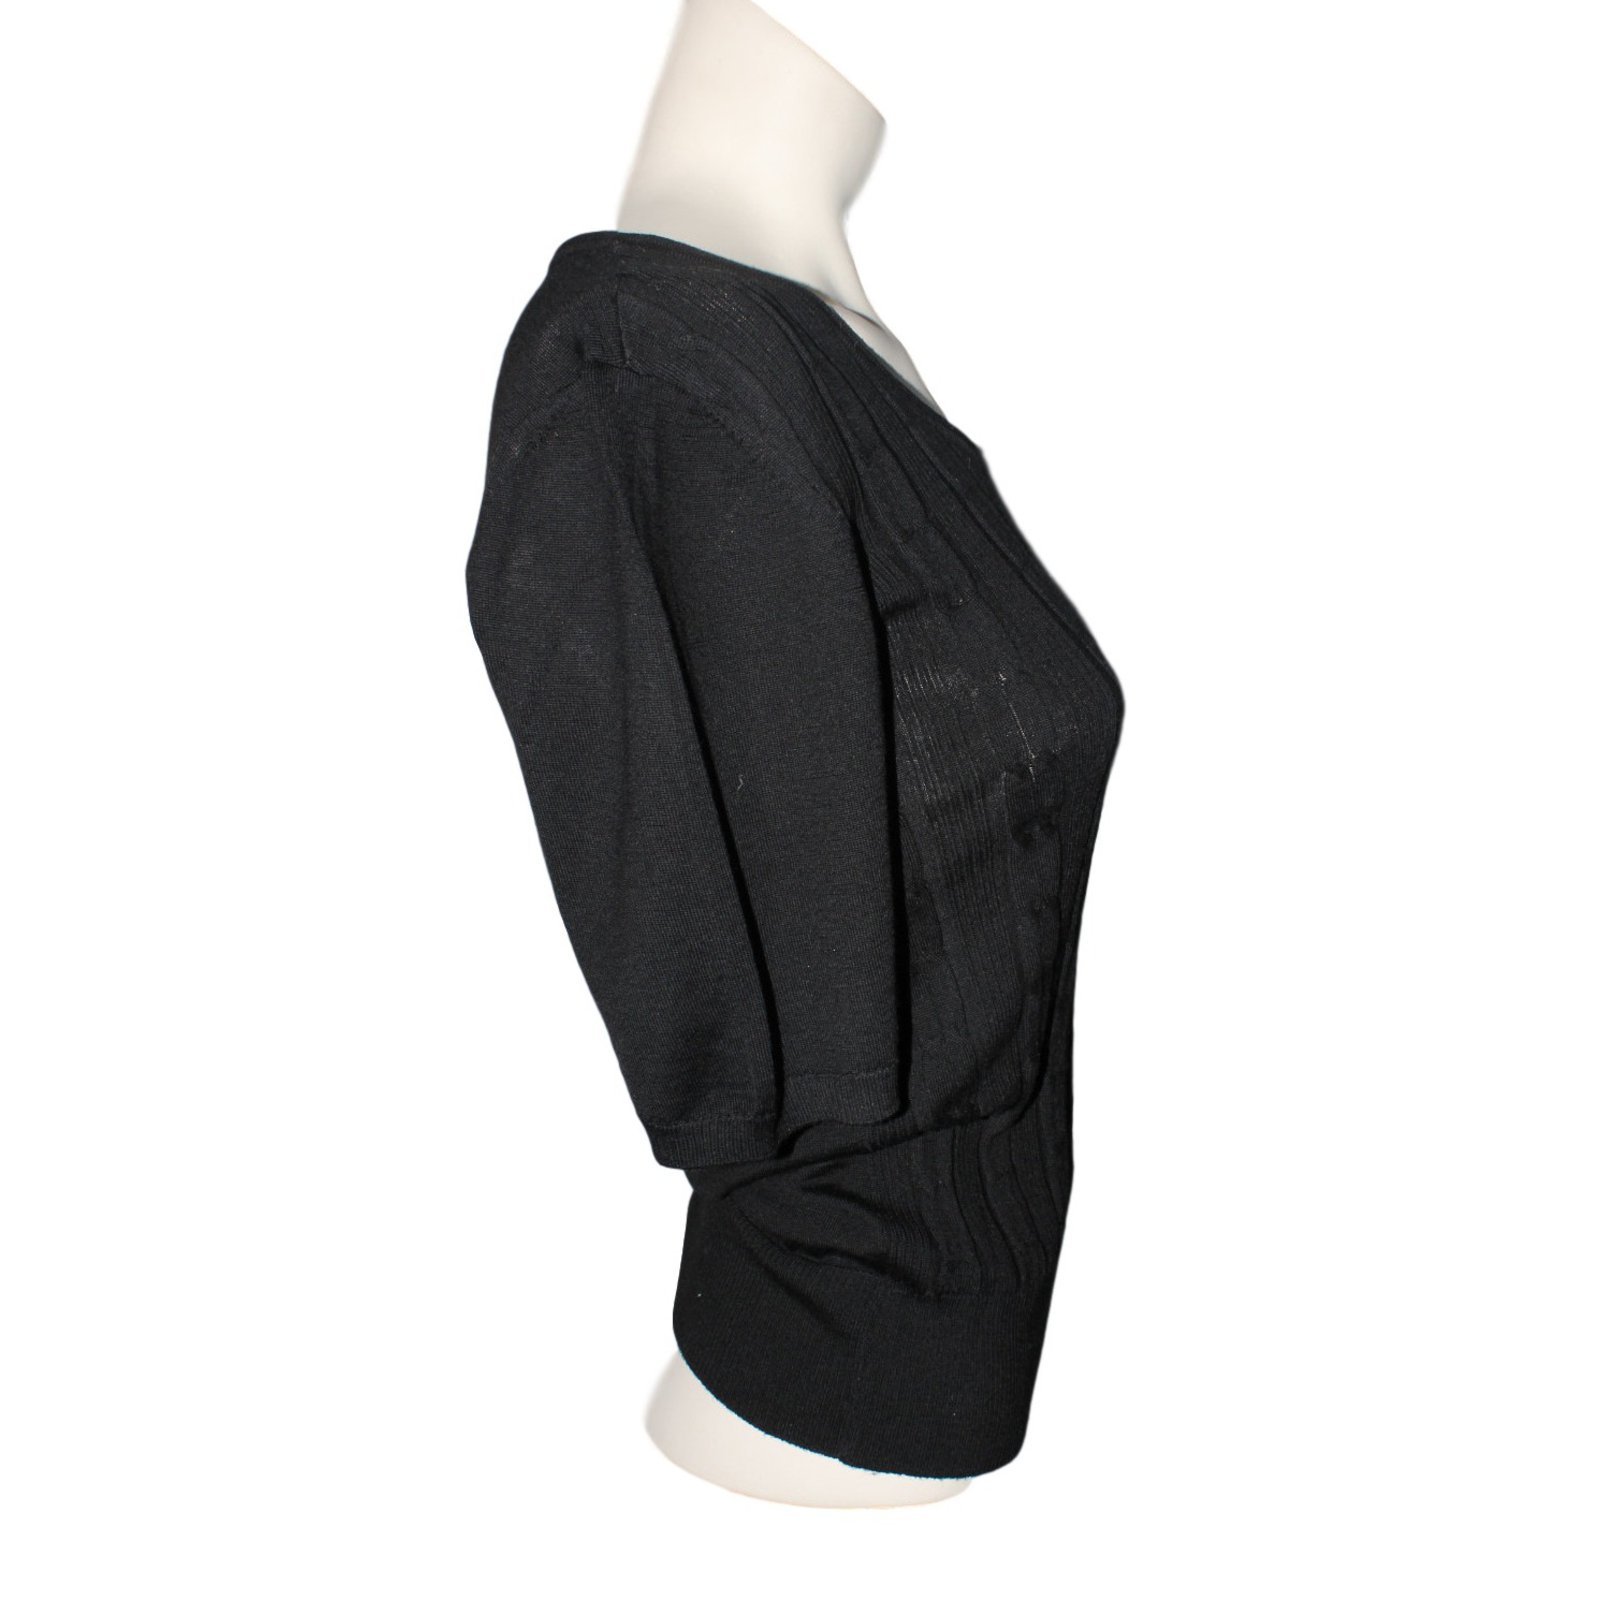 Louis Vuitton Uniforms Long Sleeve Blouse - Black Tops, Clothing -  LOU536573